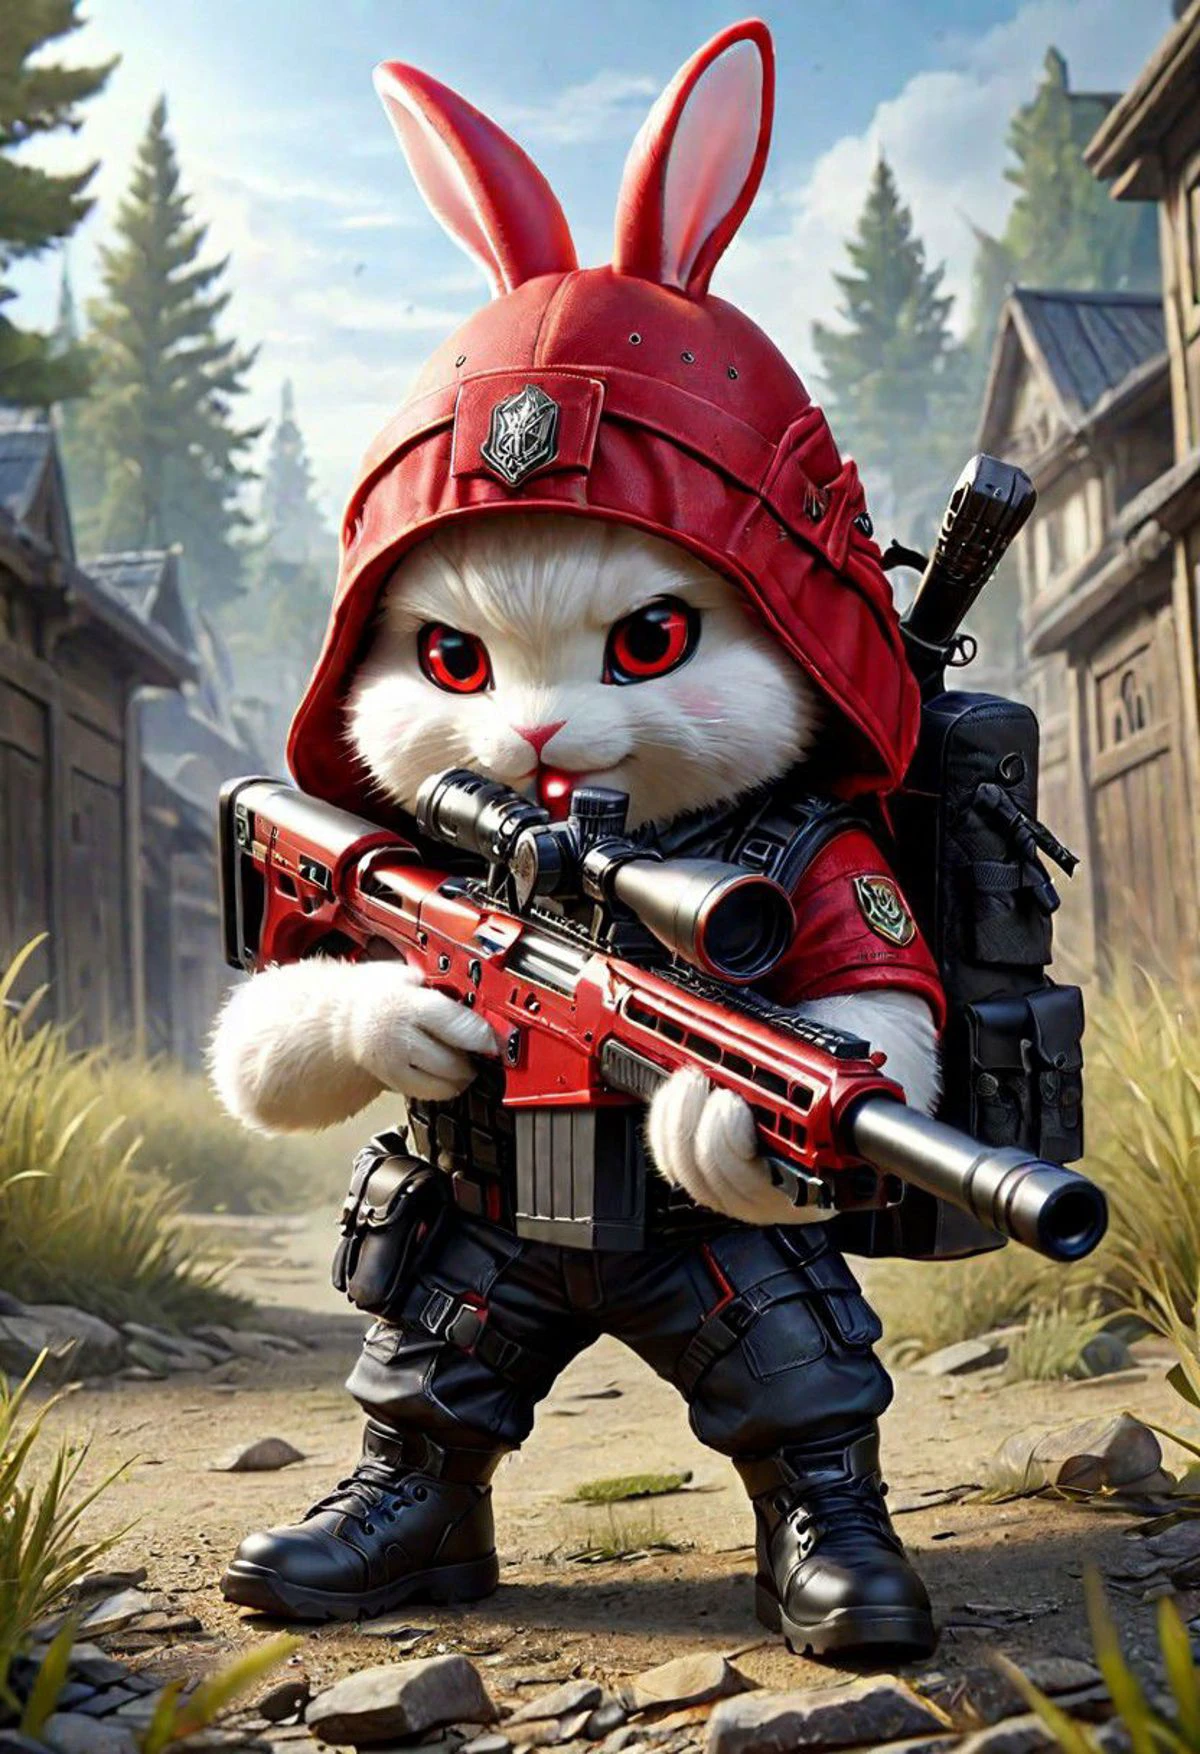 紅兔, 赤壁尺寸, 戰術背心, 戴帽子, 穿鞋, 揮舞狙擊步槍, 射击, 非常詳細, 高畫質, 傑作, 最好的品質, 超詳細, 超詳細